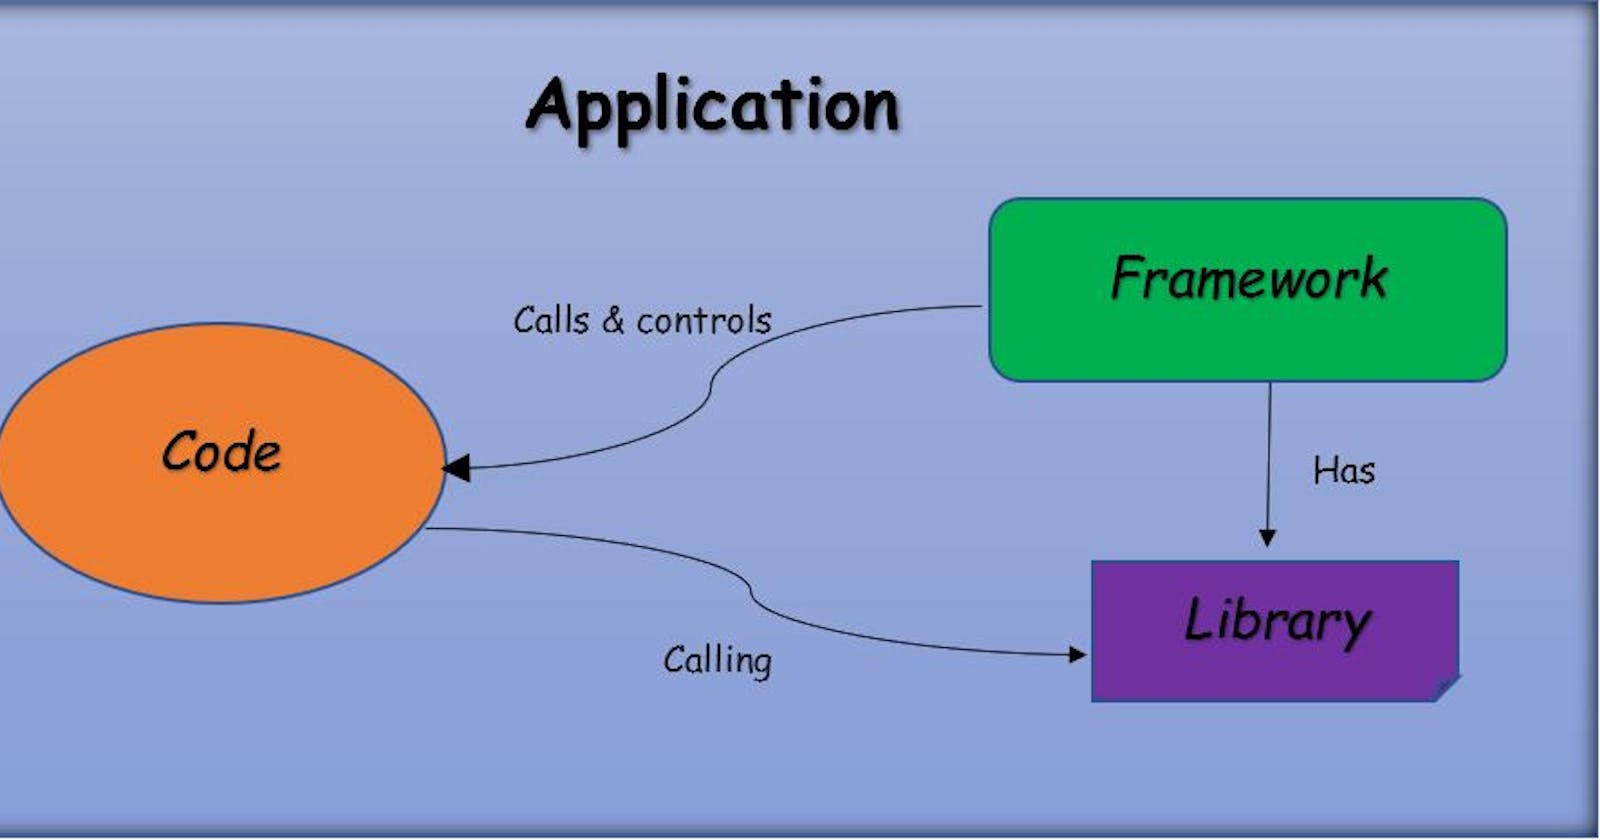 Library v/s Framework